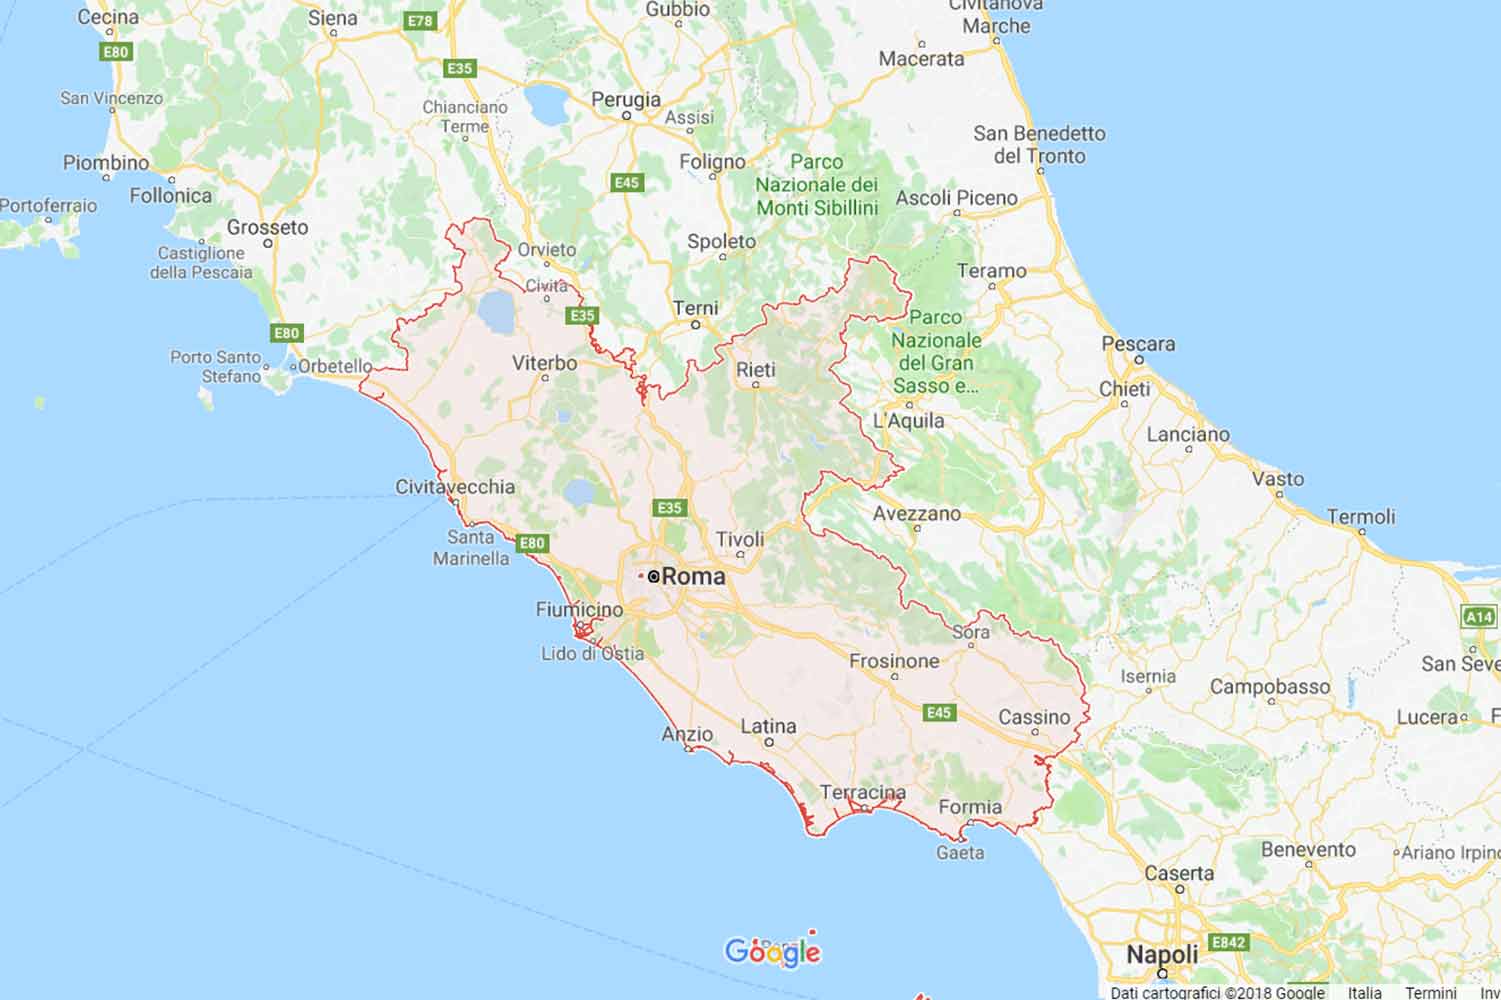 Lazio - Frosinone - Boville Ernica Preventivi Veloci google maps